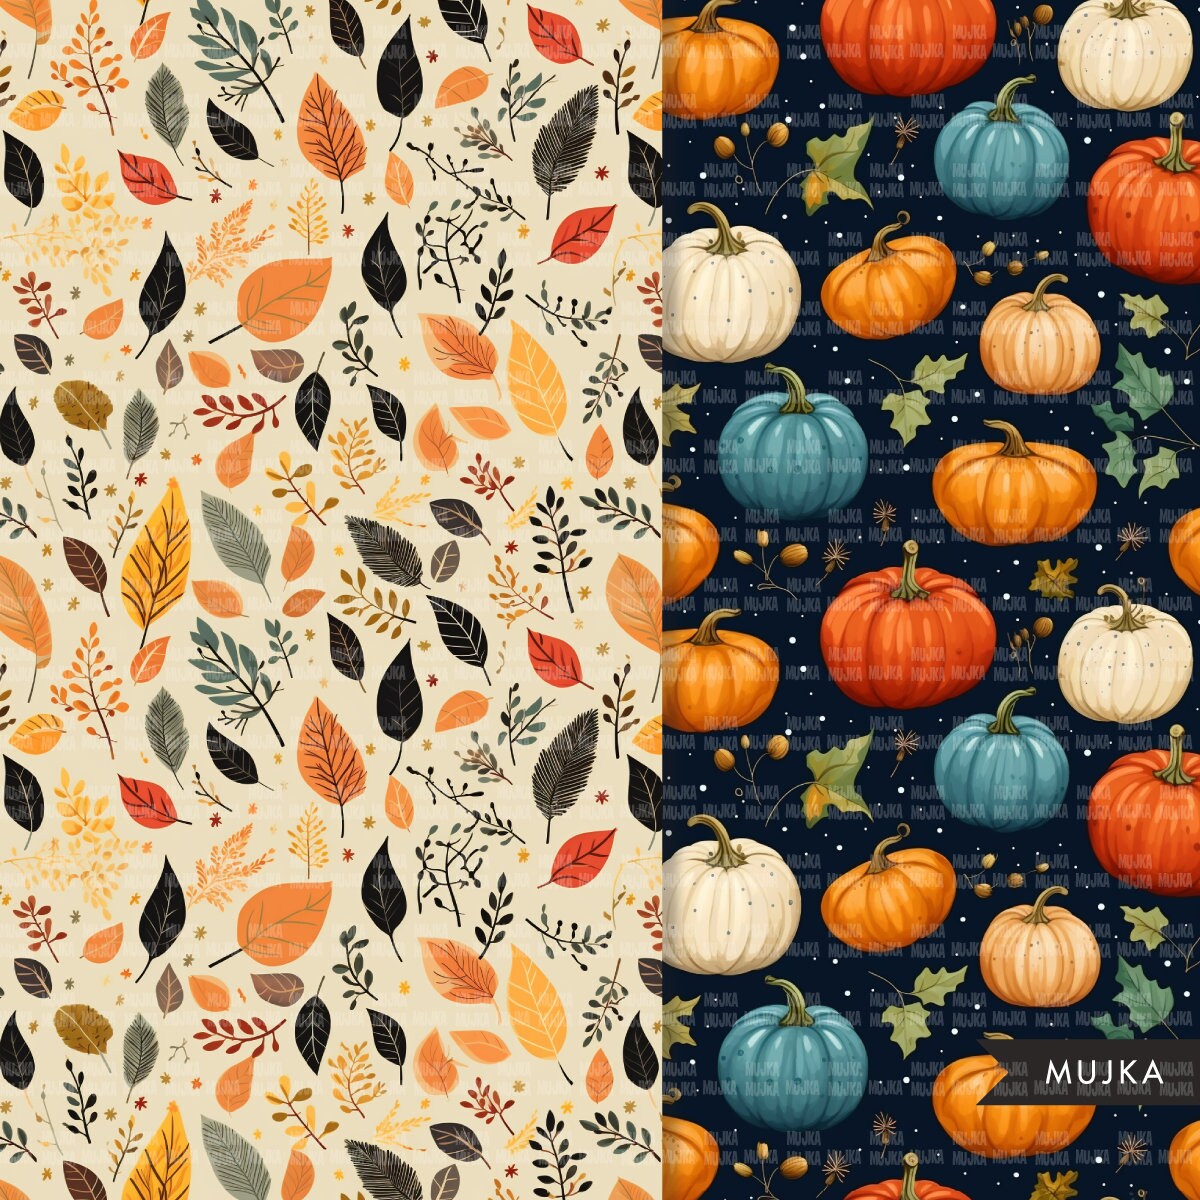 Papeles digitales de otoño, patrones sin costuras de calabaza, patrón imprimible de hojas de otoño, fondo digital, calabazas de otoño png, fondo de otoño